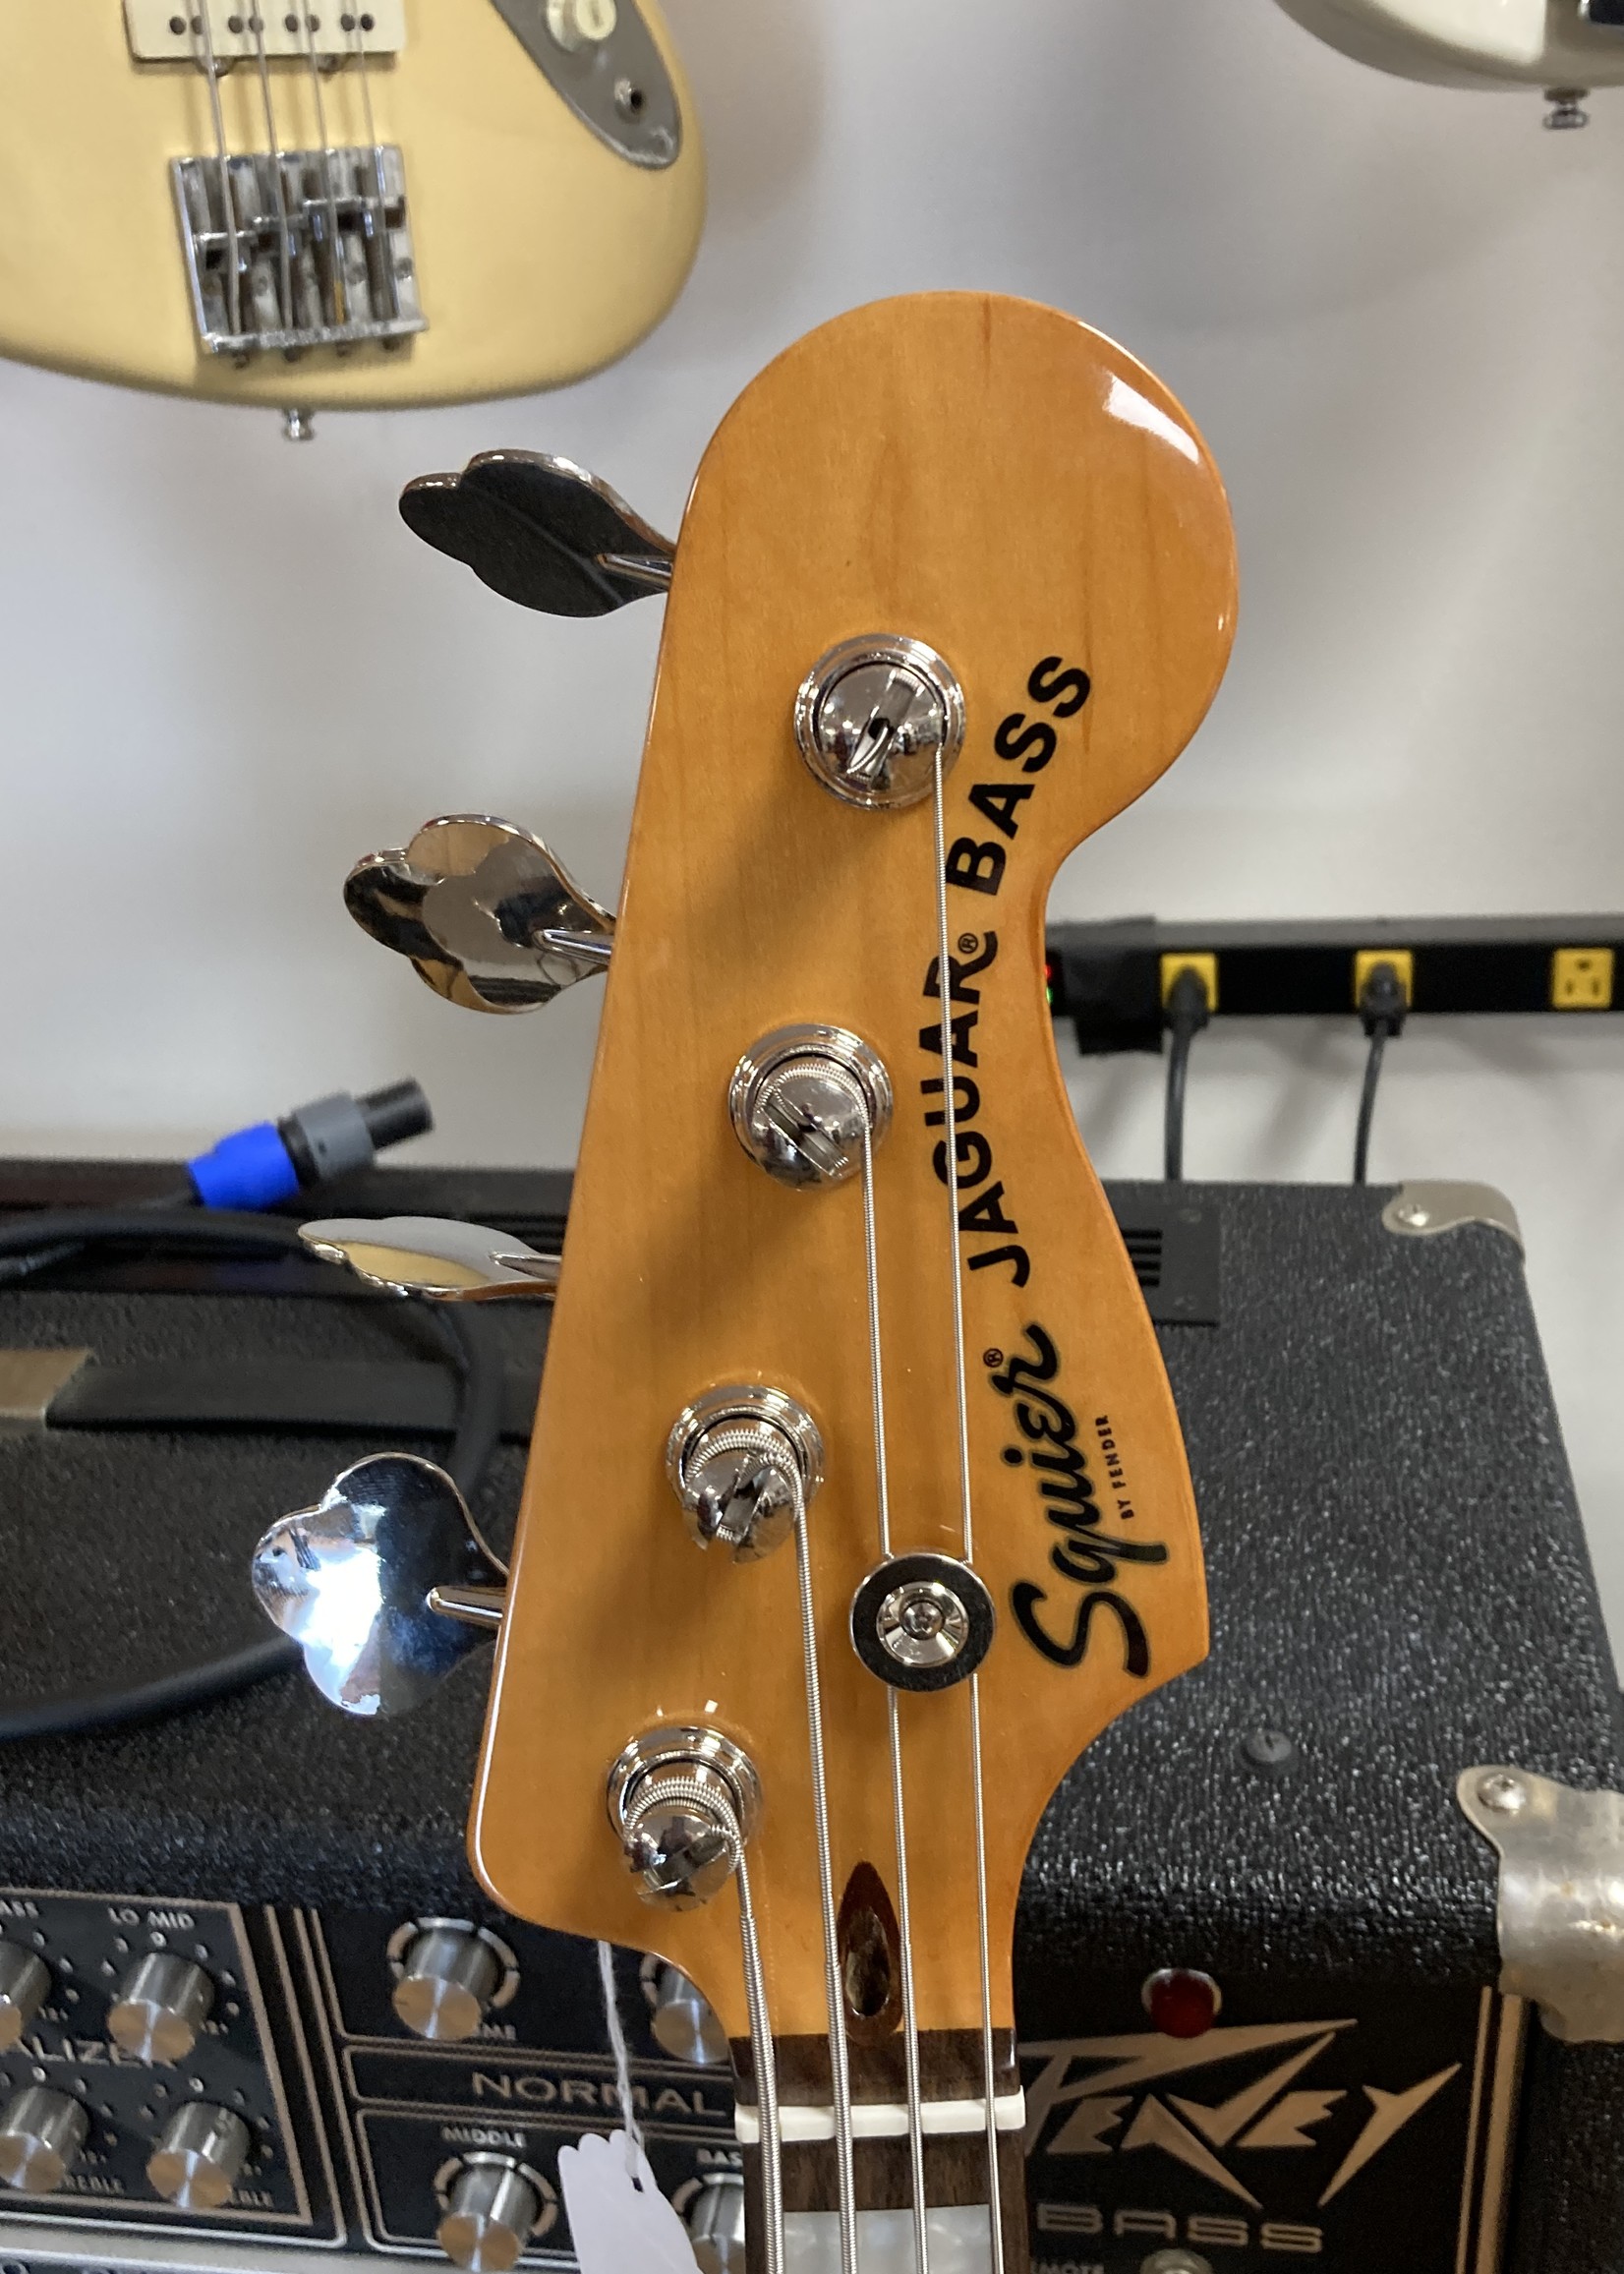 Squier Classic Vibe Jaguar Bass